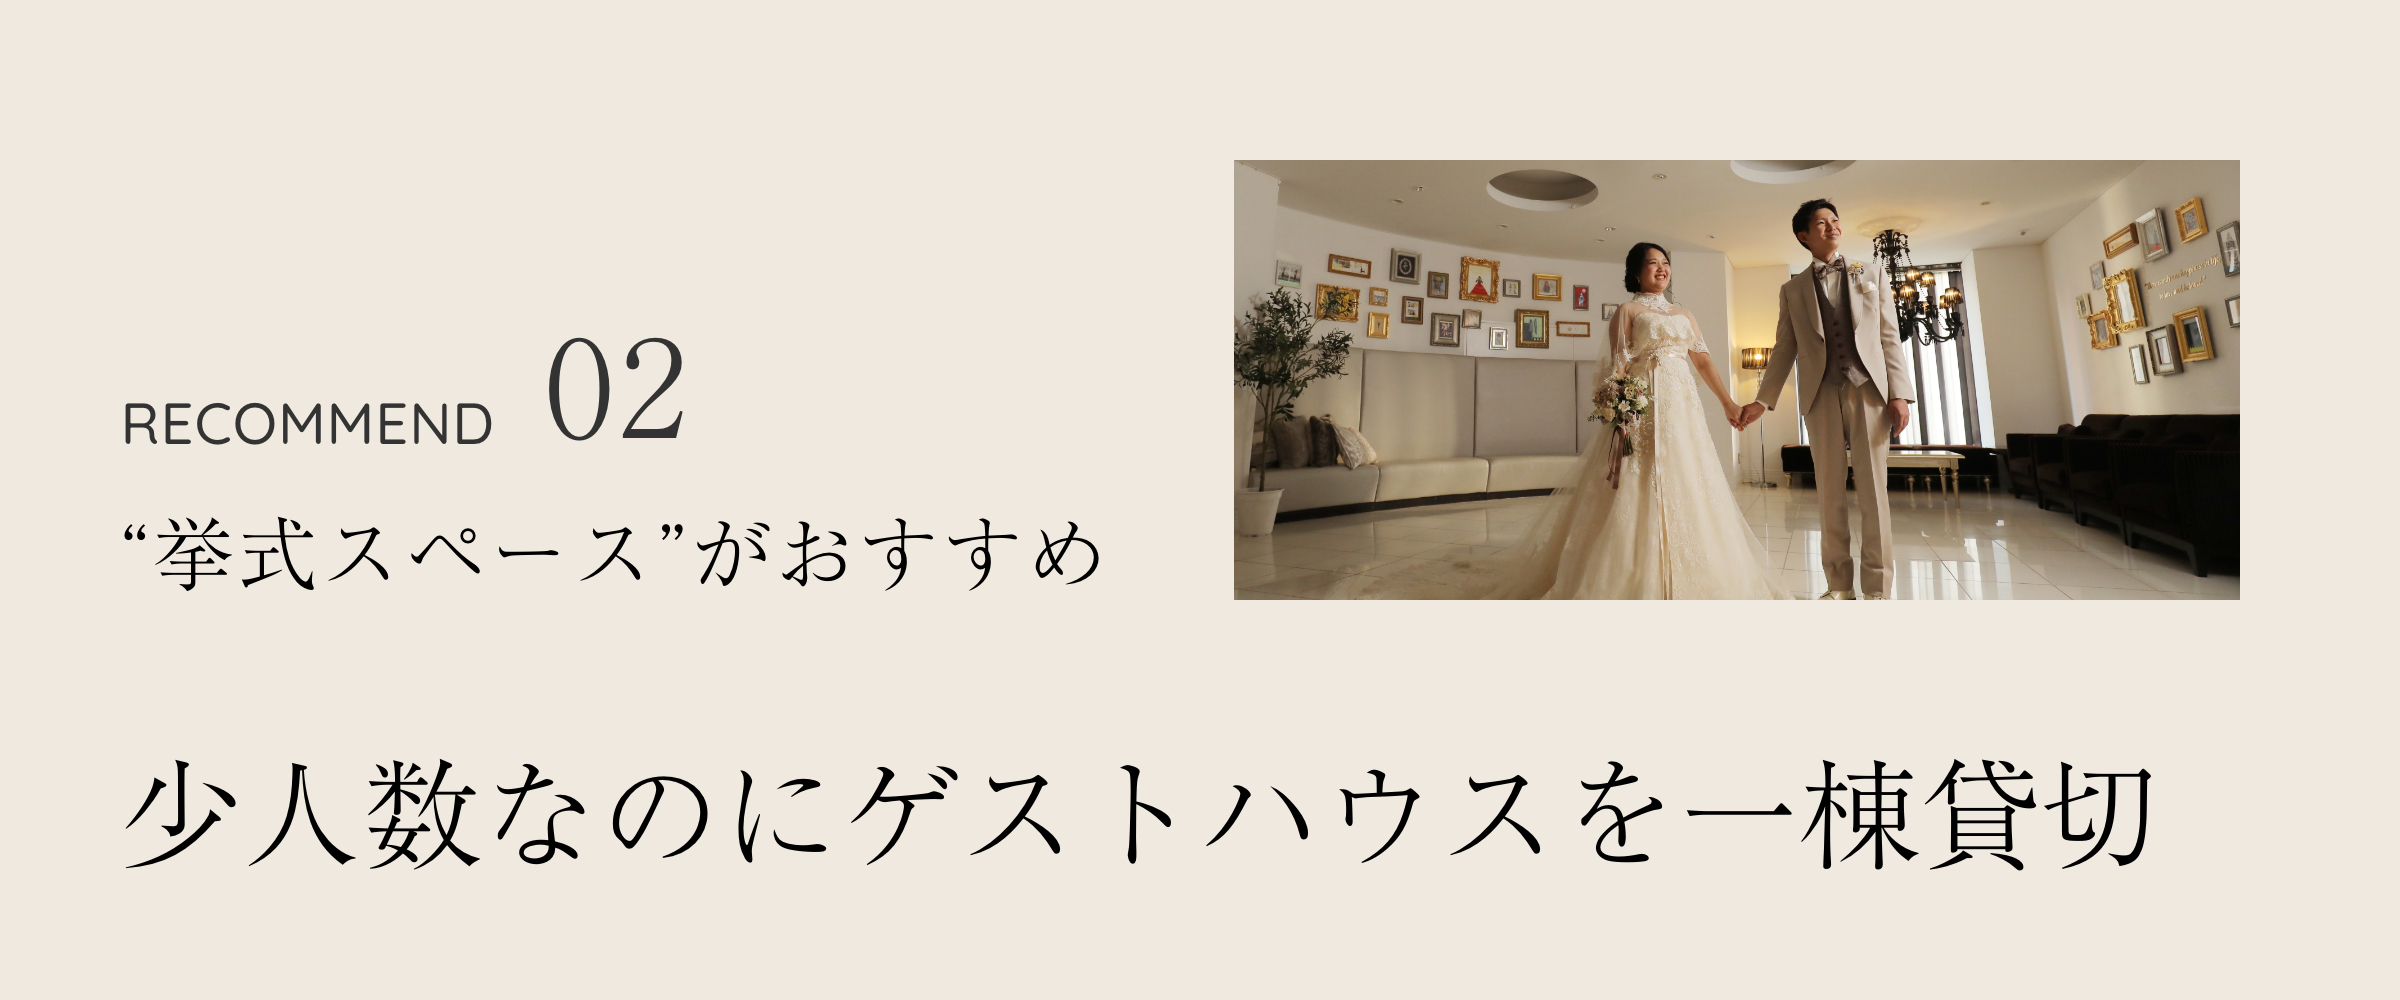 広島の少人数結婚式 広島の格安結婚式ならスーパーウエディング